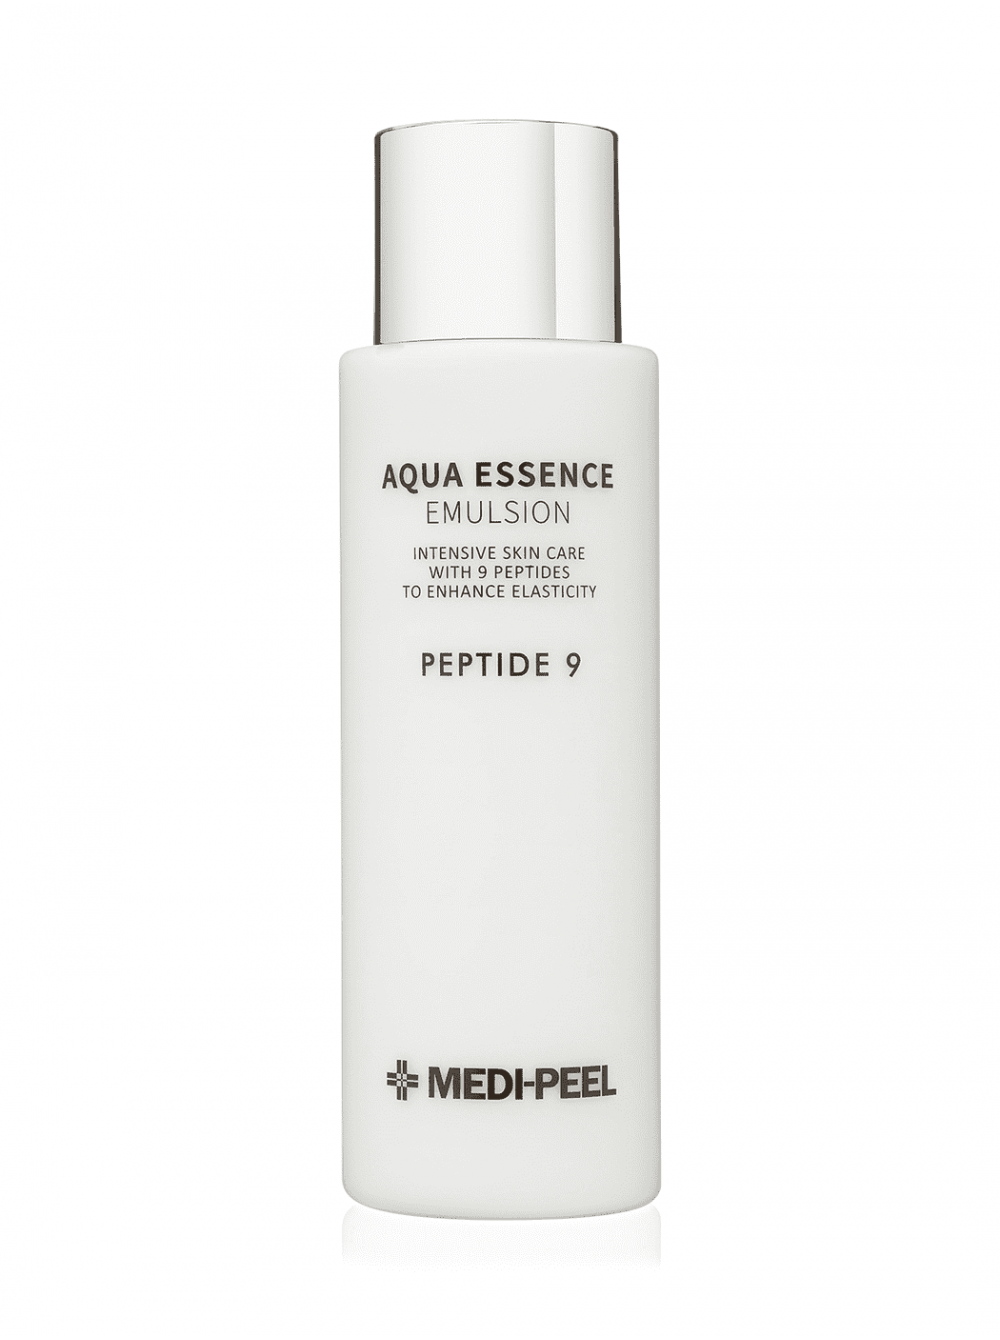 Medi-Peel Aqua Essence Emulsion Peptide 9 250мл. Medi Peel Aqua Essence Emulsion. Medi Peel Emulsion Peptide 9. Emulsion Medi Peel Tox.